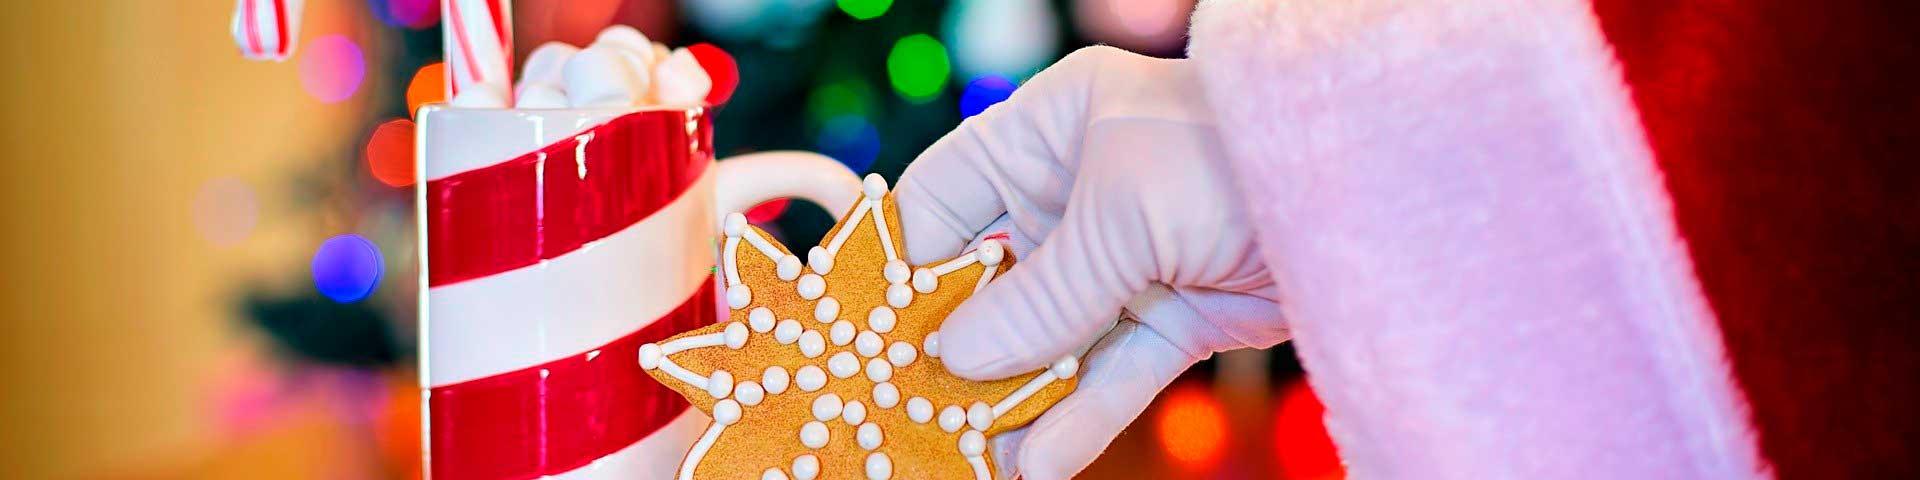 Få varm kakao og juesmåkager ved julehyggehjørnet på Nettotorvet i Dianalund Centret